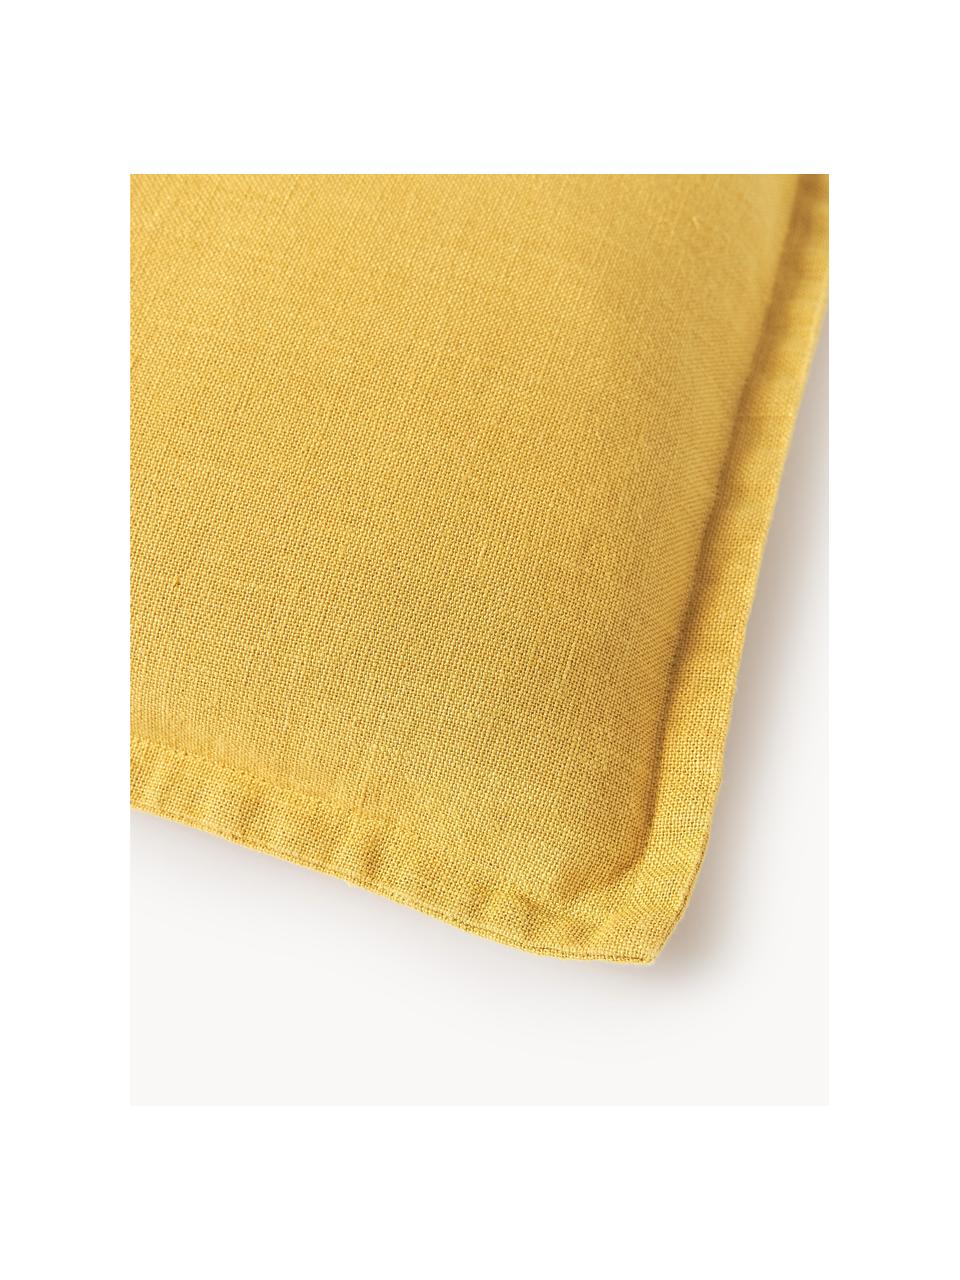 Housse de coussin pur lin jaune Lanya, 100 % pur lin, Jaune, larg. 60 x long. 60 cm